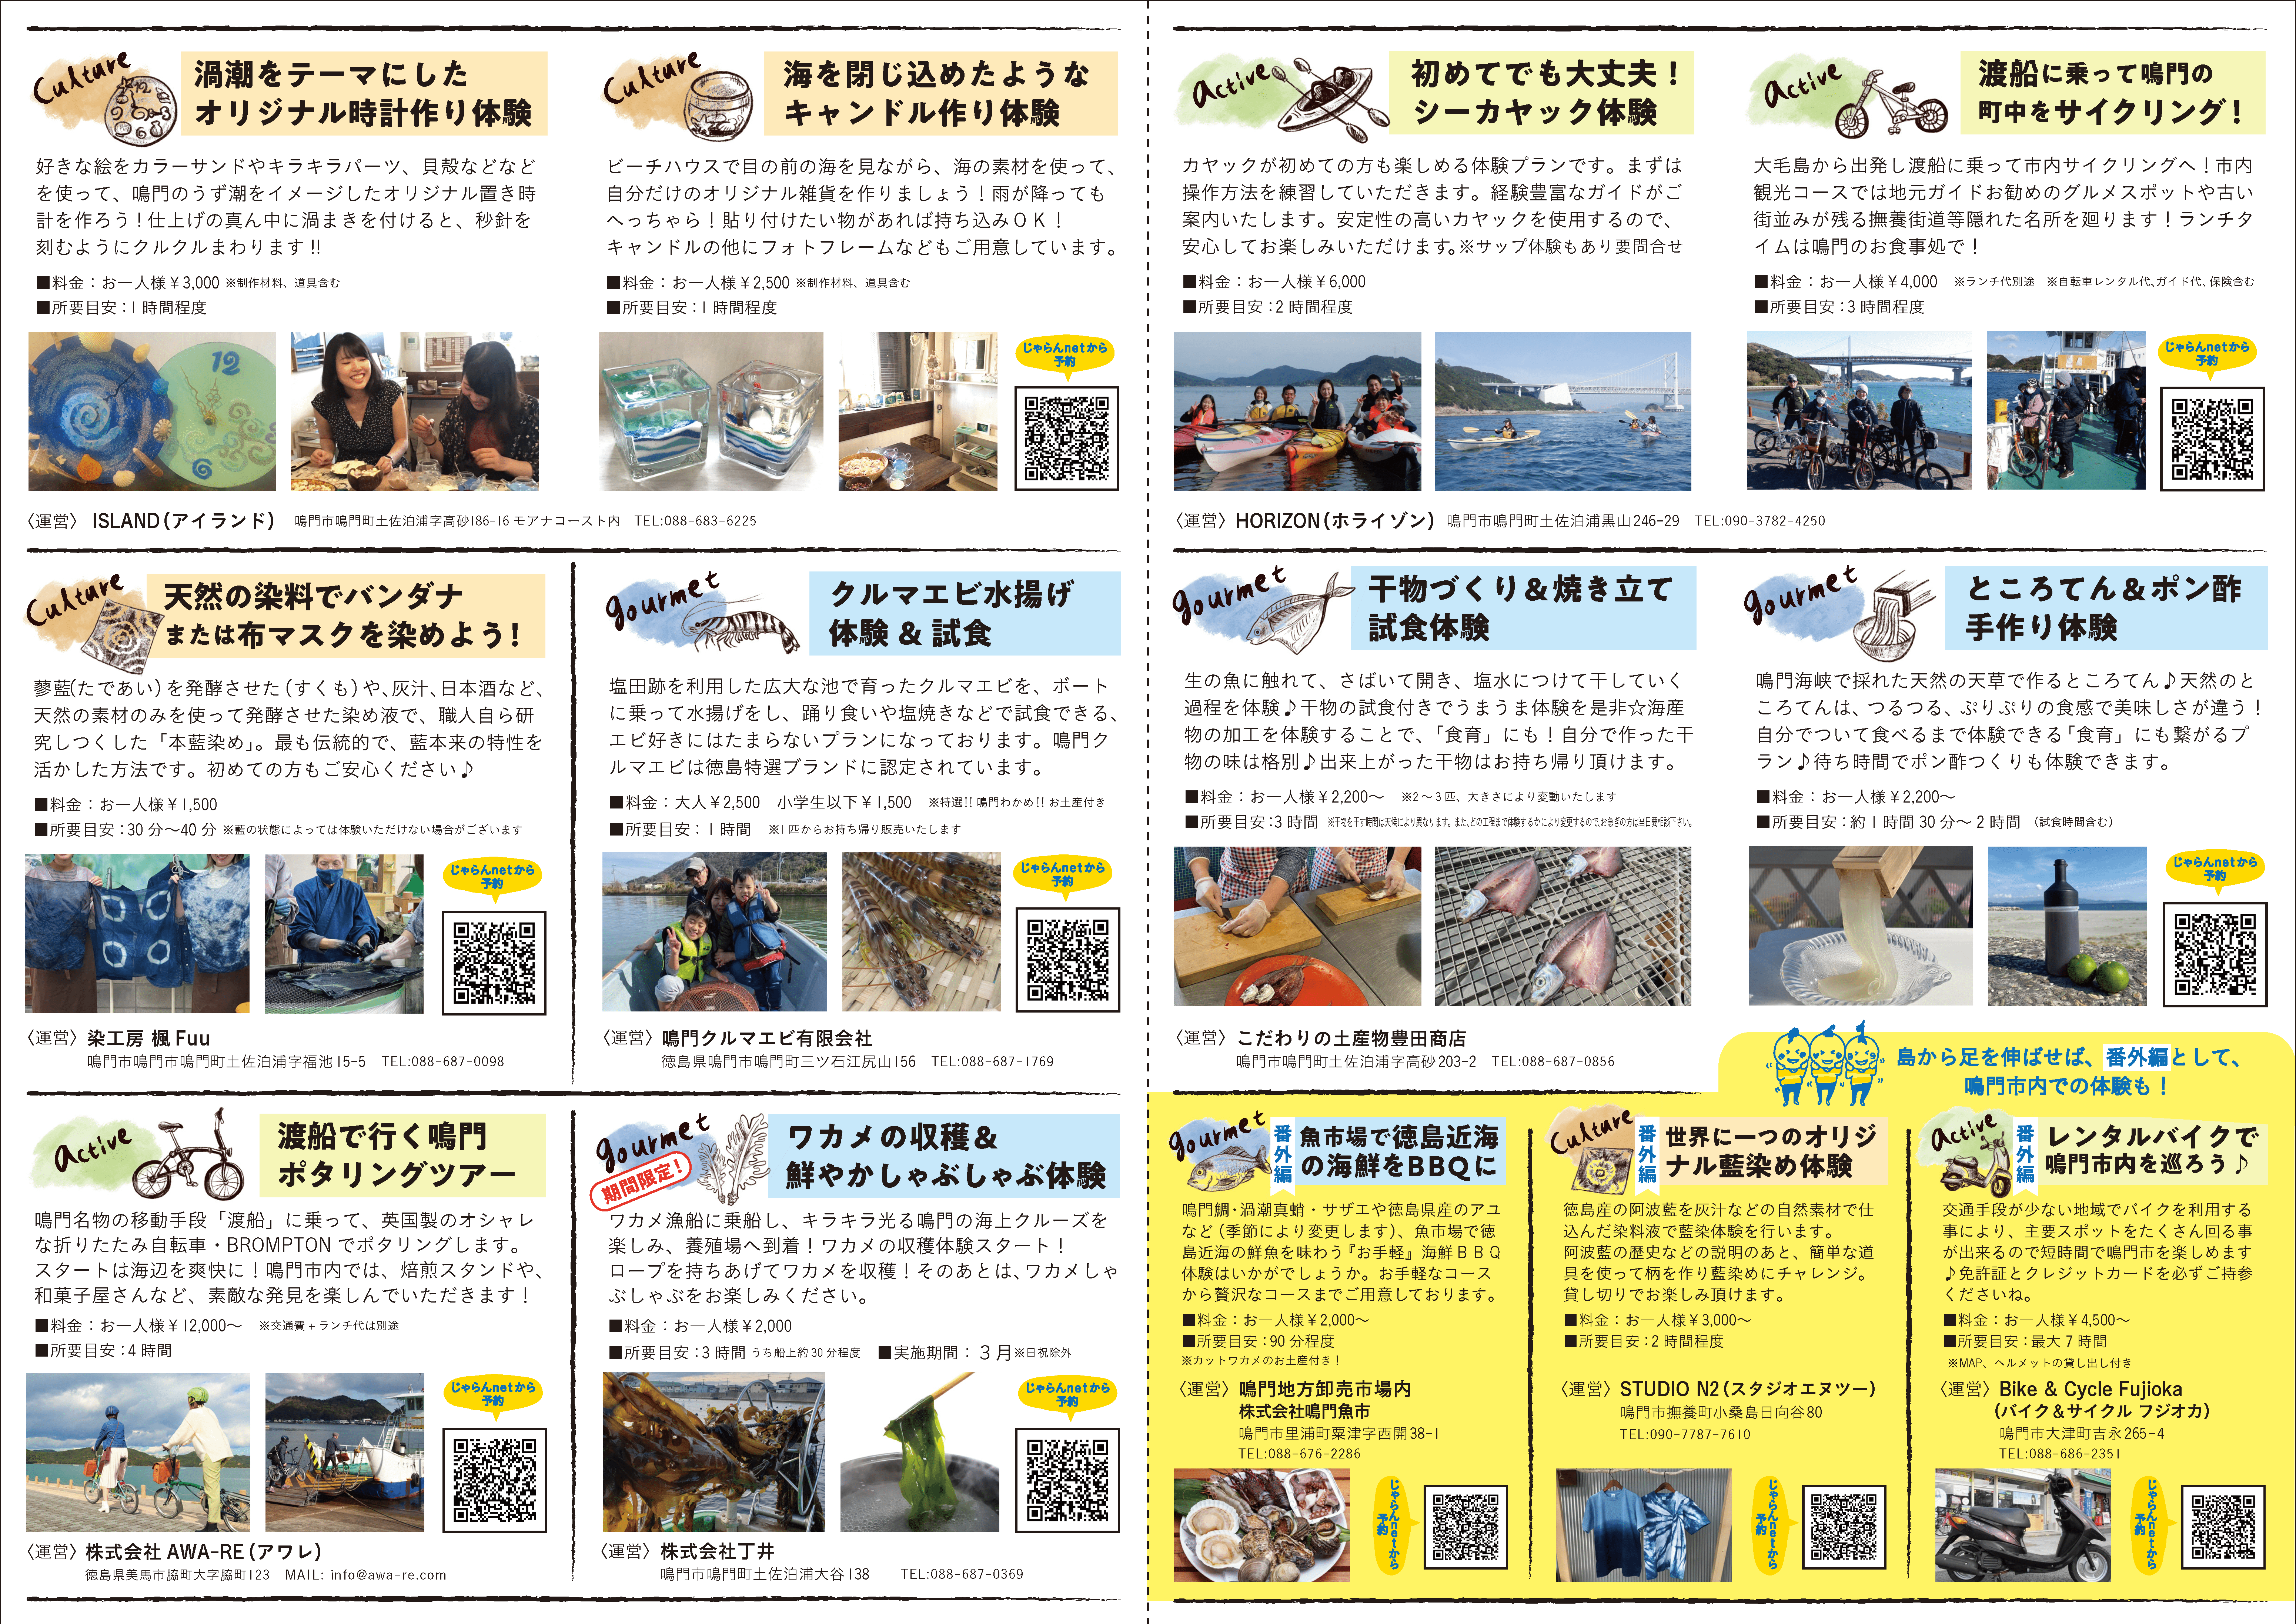 体験コンテンツパンフレット(内面)